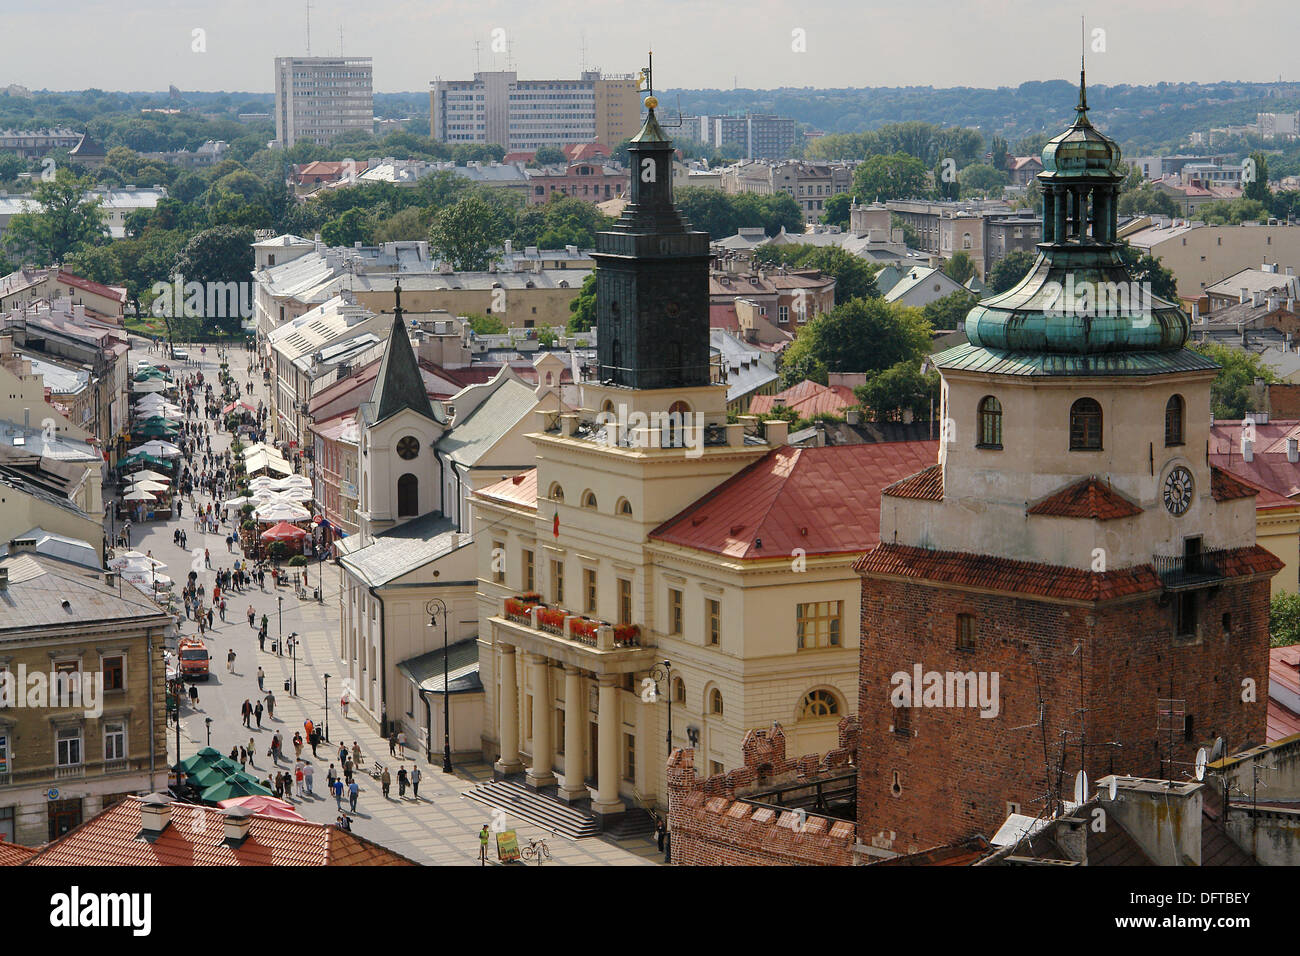 Lublin est une ville importante de l'histoire polonaise. Pologne Banque D'Images